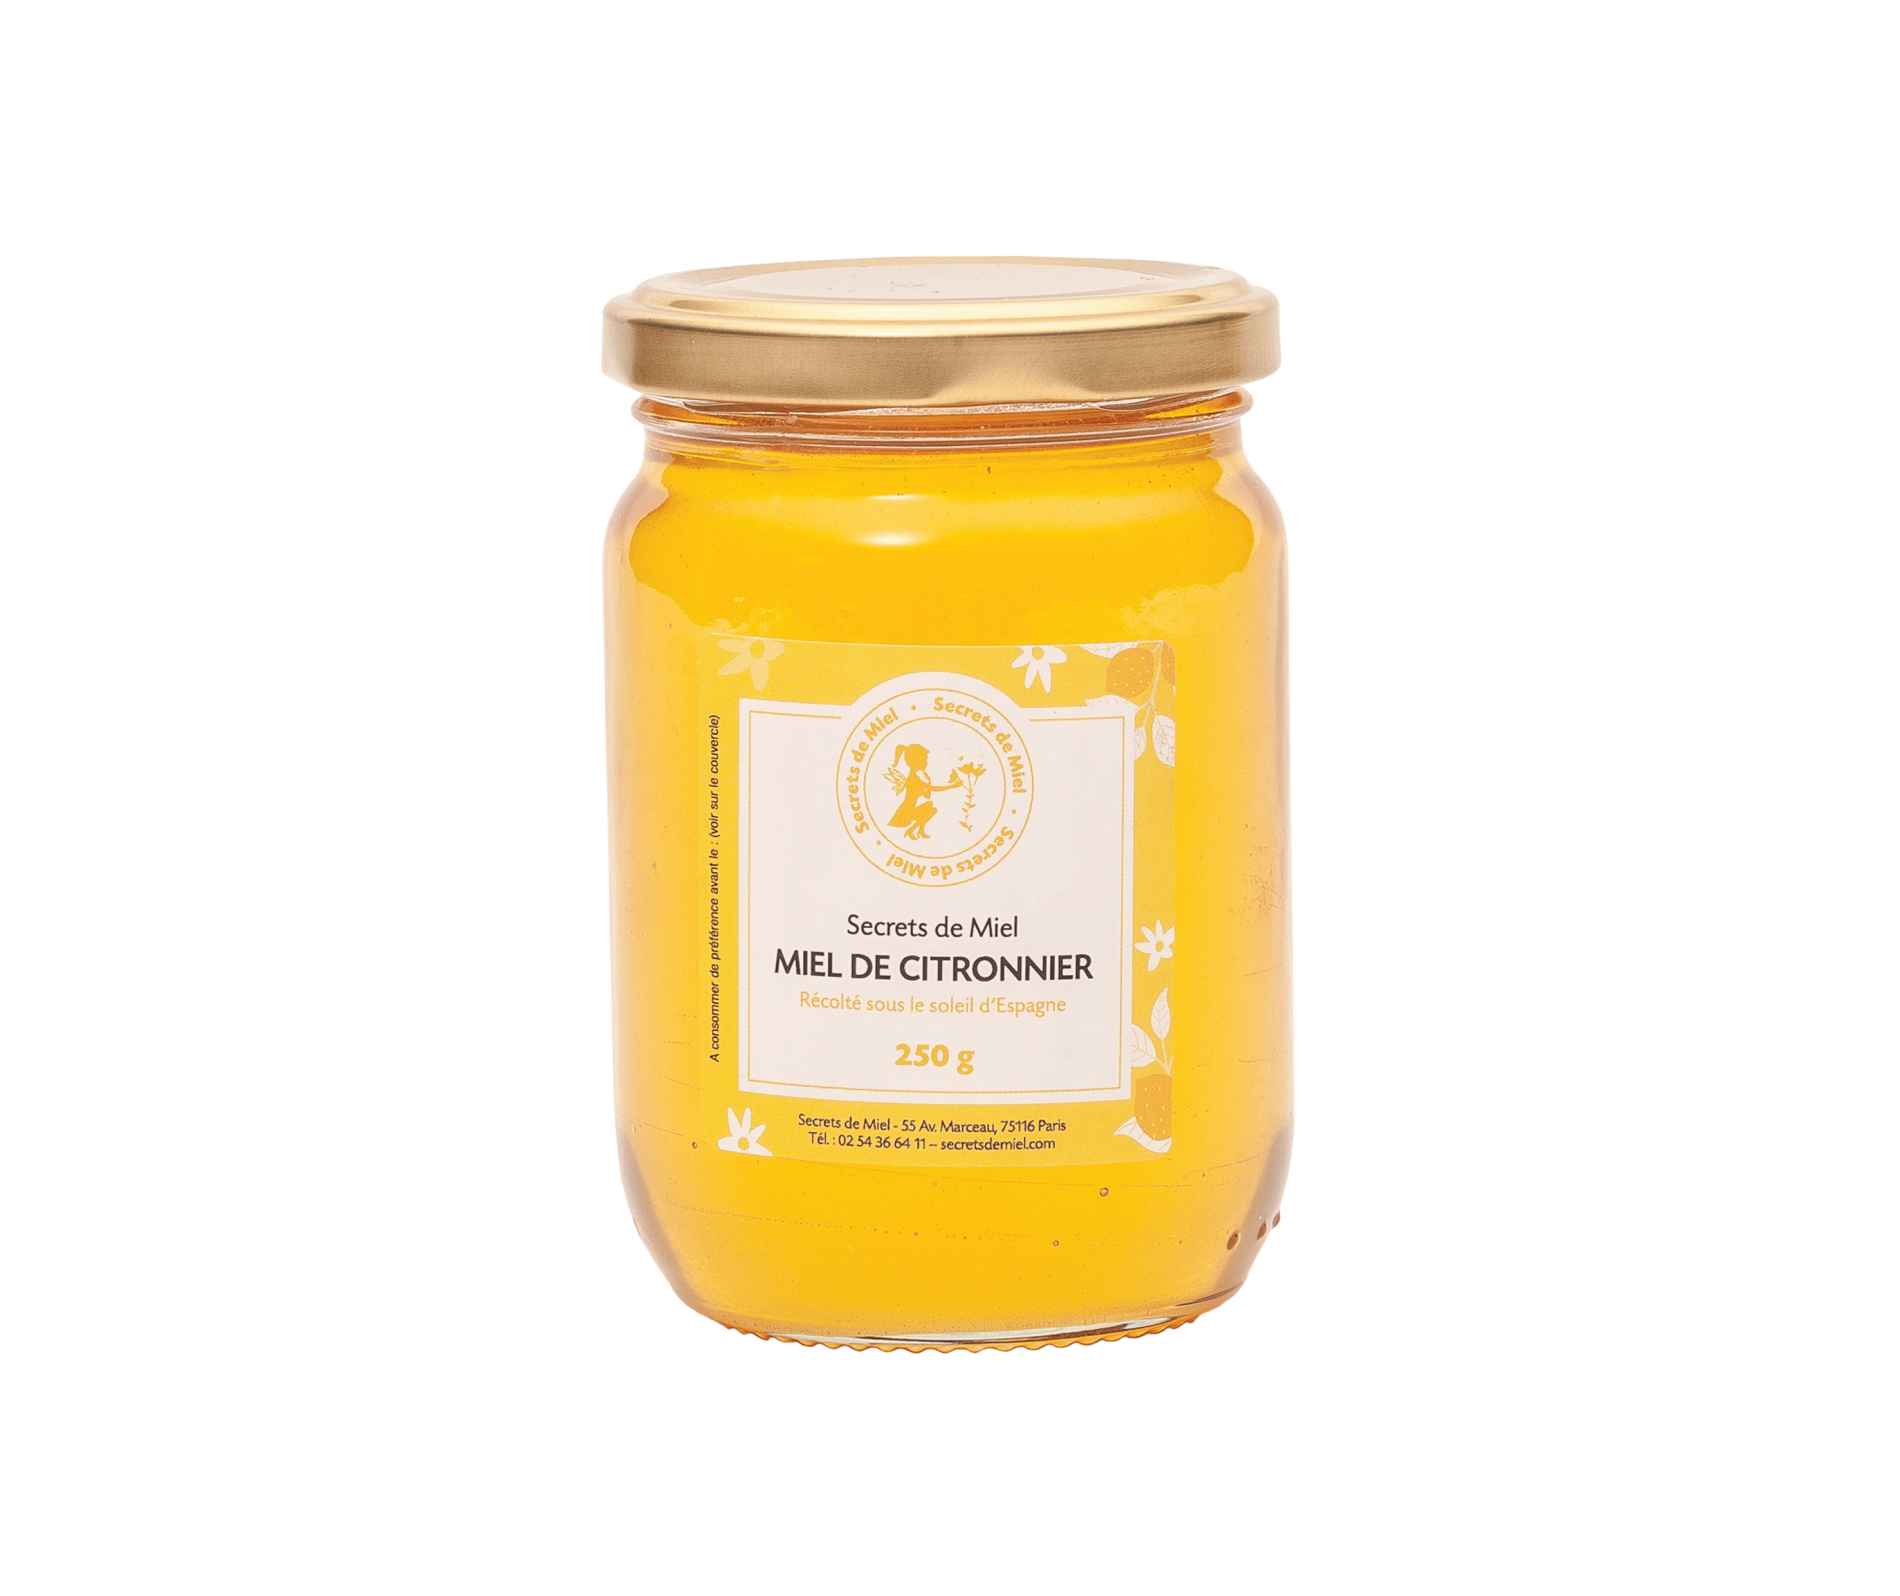 miel - terroir - tradition - apiculture - Secrets de Miel - récolté à froid - non pasteurisé - non chauffé - naturel - produit naturel - Secrets de Miel